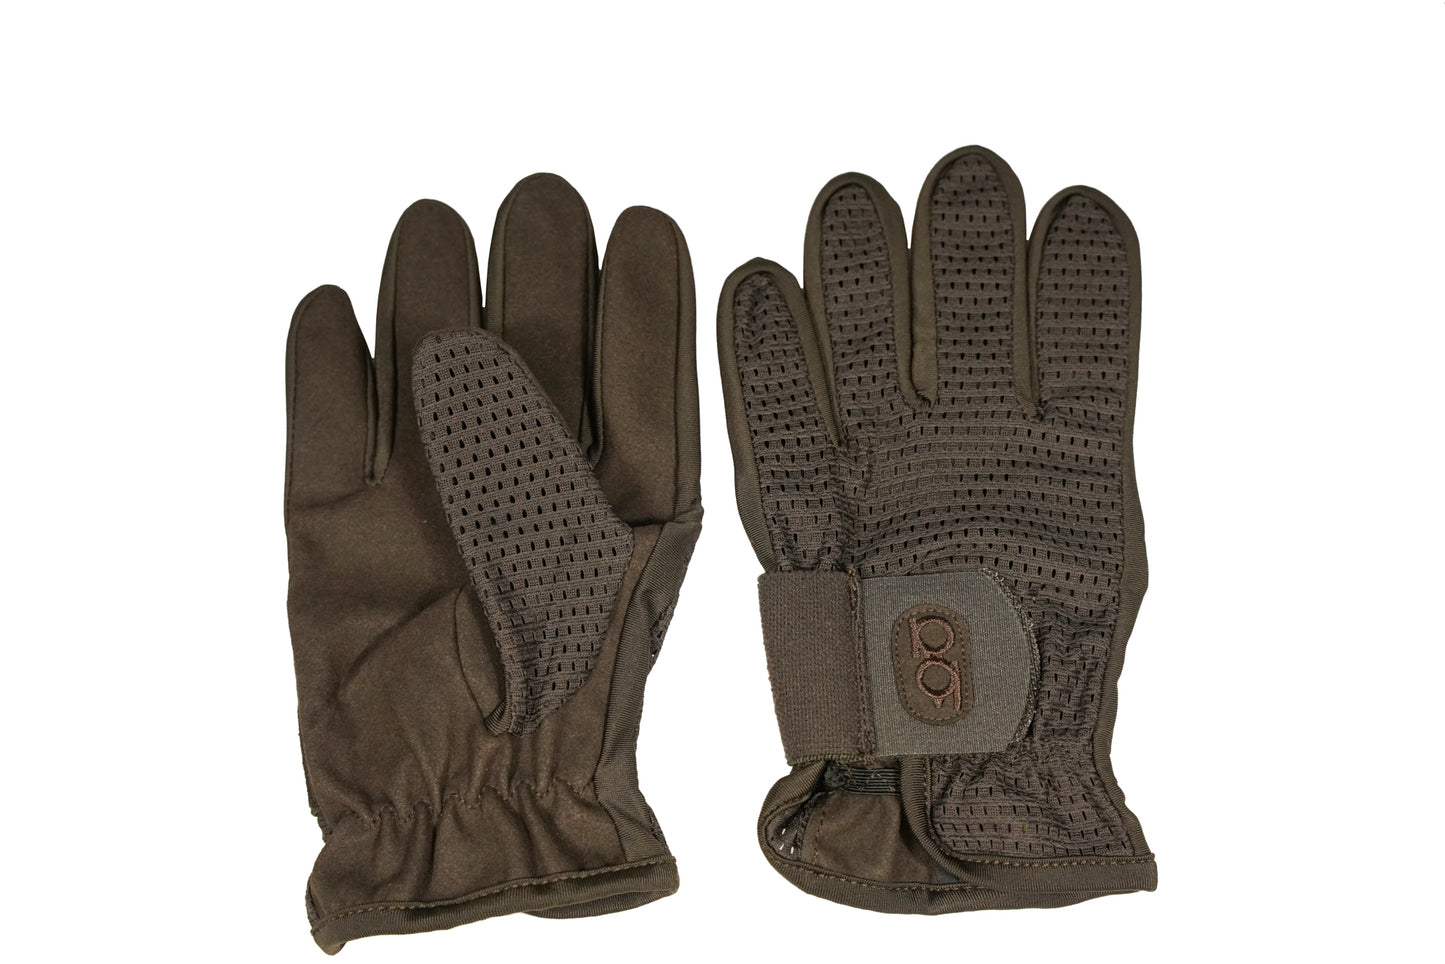 Bob Allen Shotgunner's Gloves